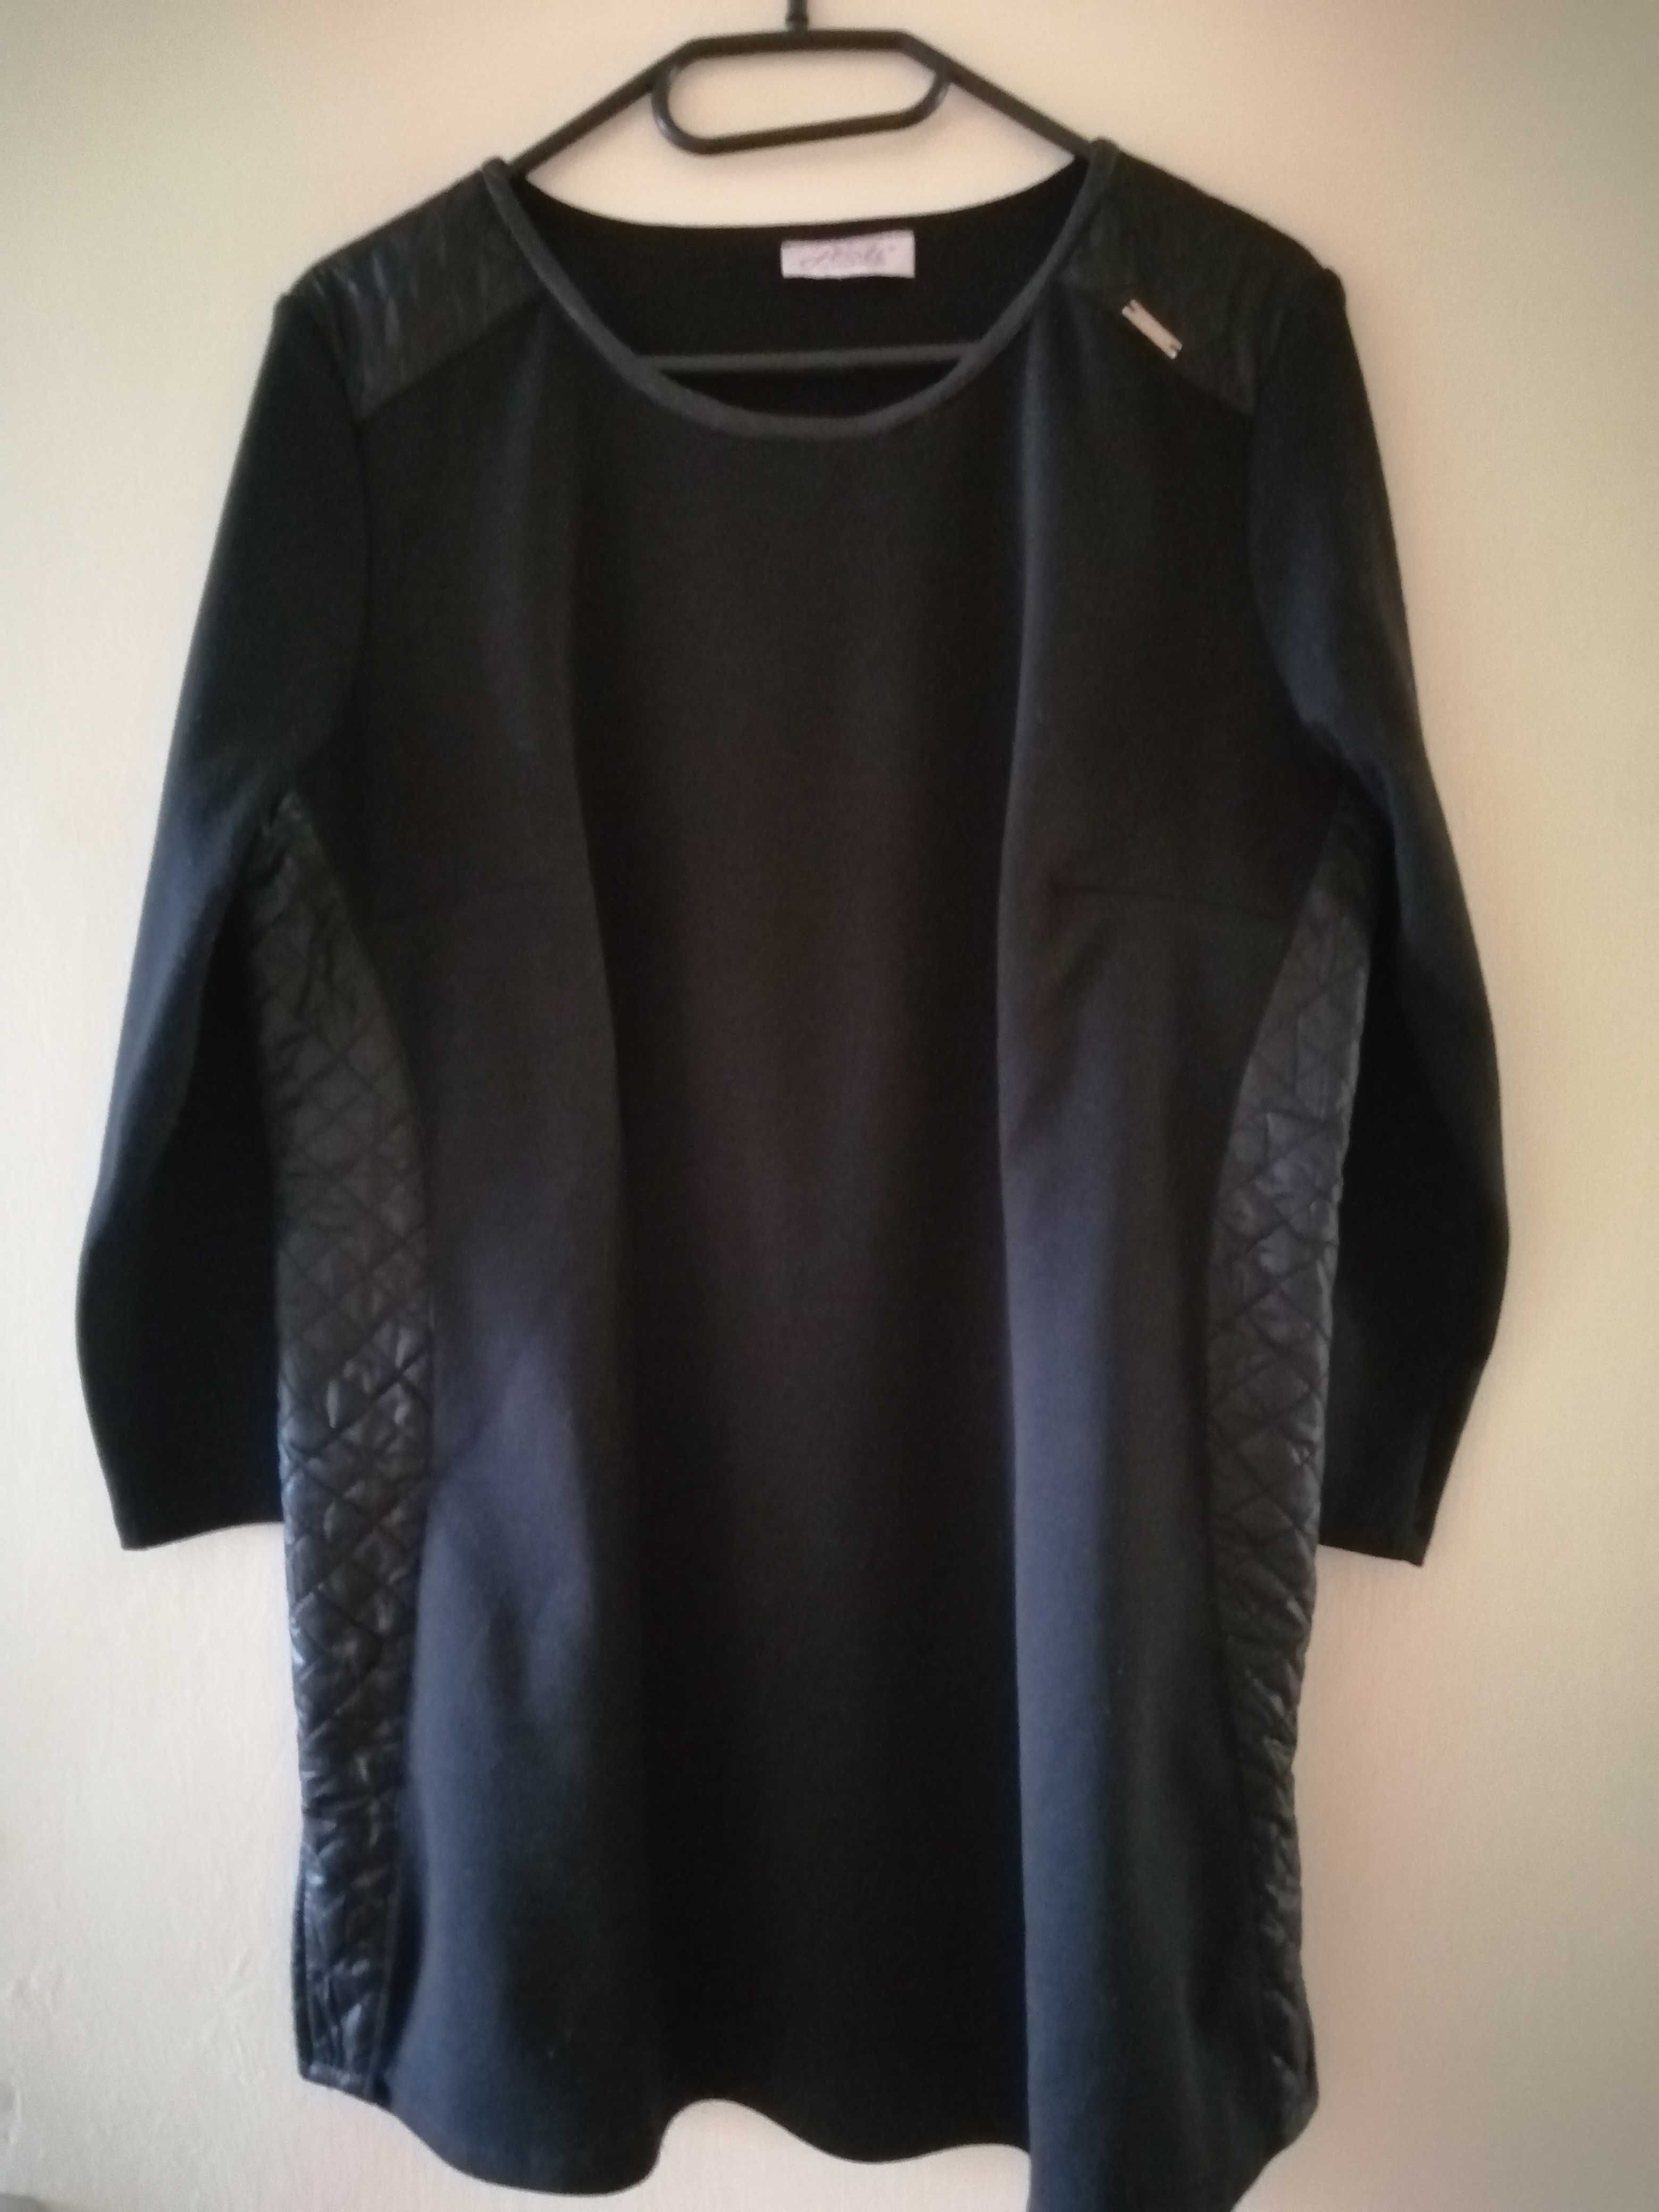 Czarna bluza - tunika, łącząca dwa rodzaje materiałów.